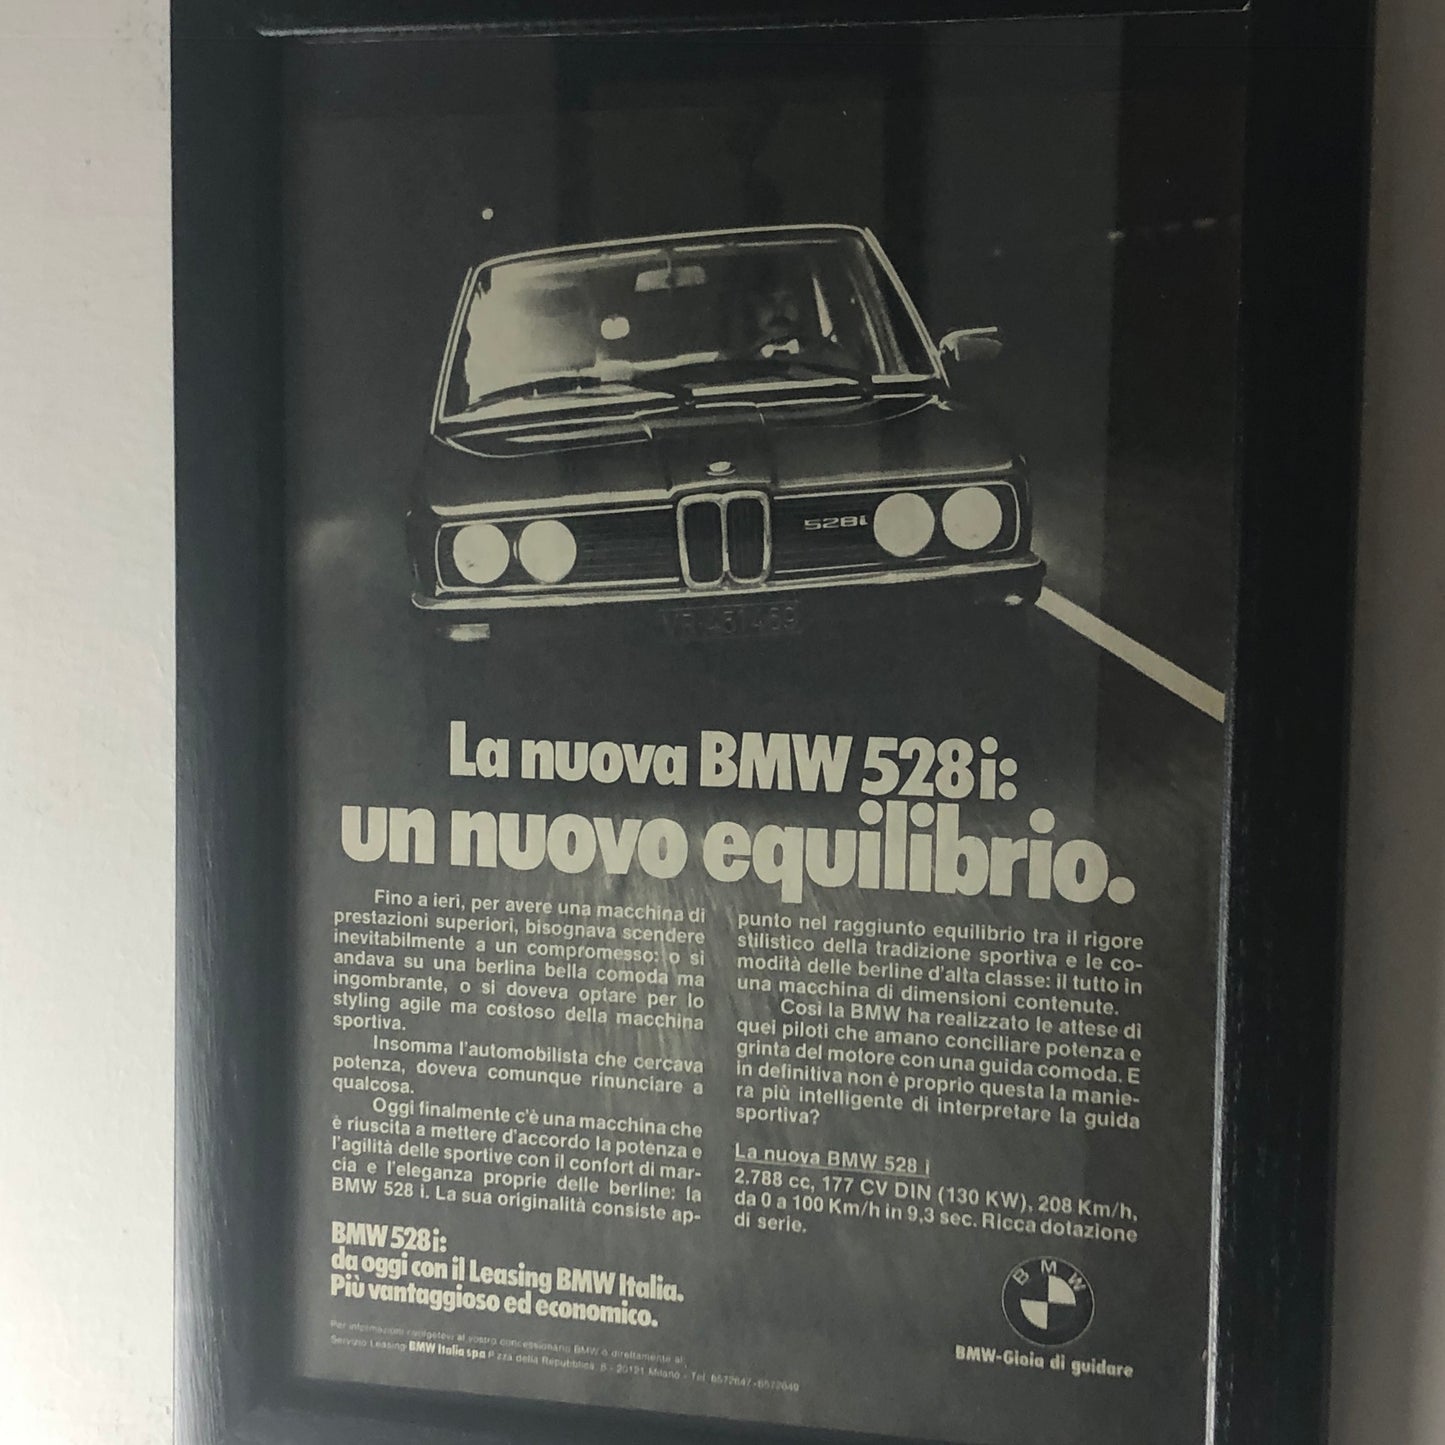 BMW, Pubblicità Anno 1978 la Nuova BMW 528i un Nuovo Equilibrio